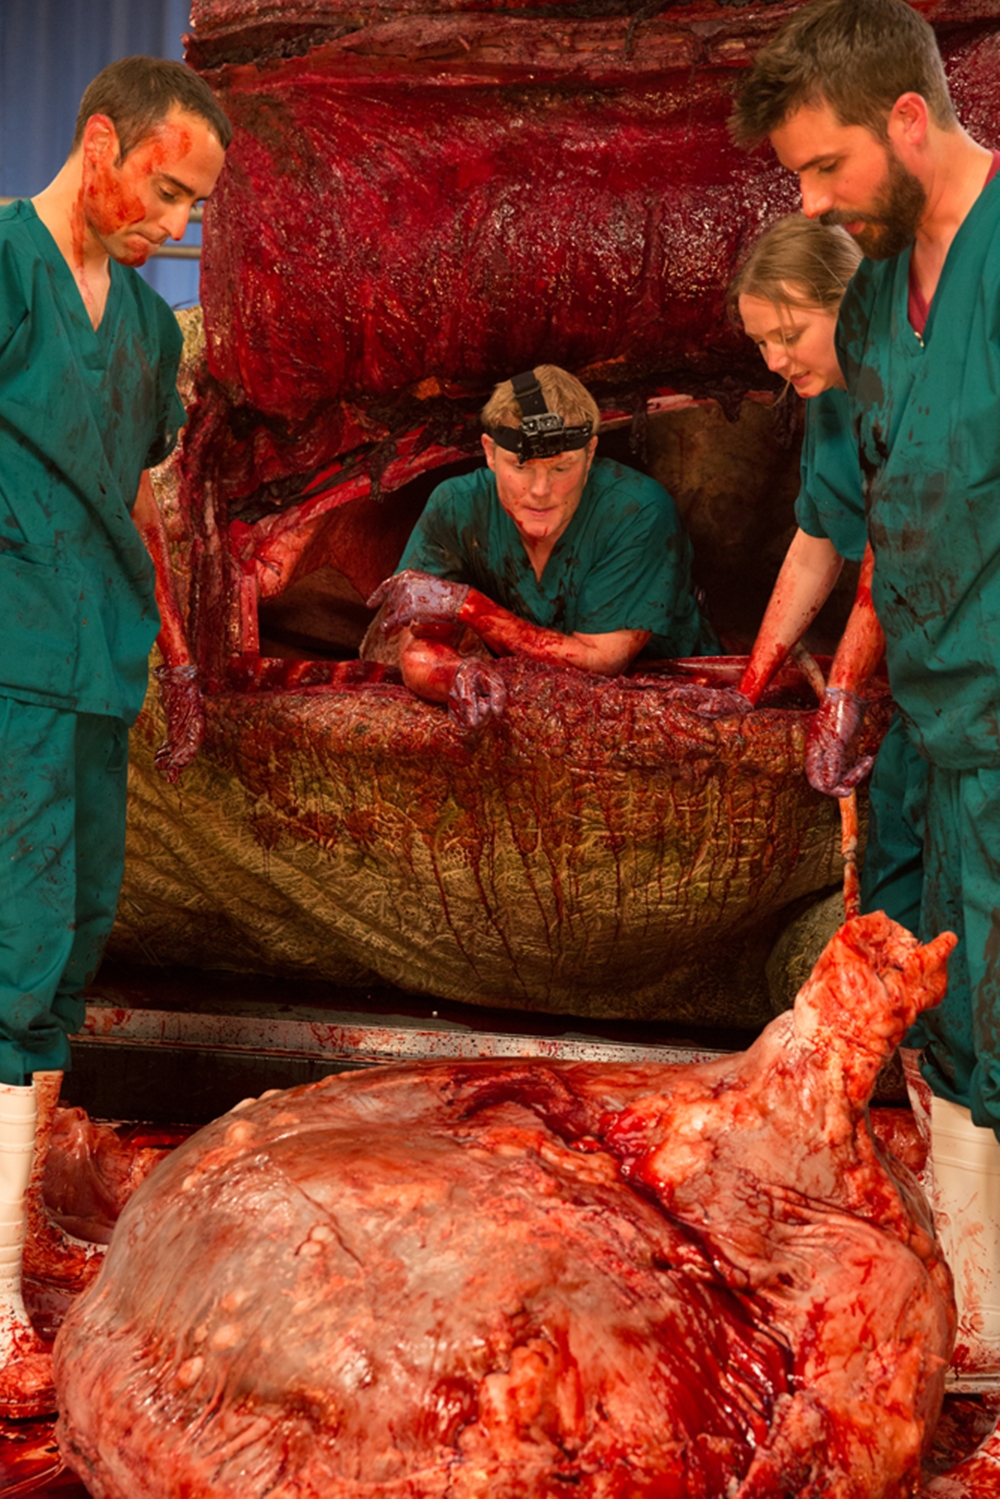 Presas e sangue: confira a autópsia de uma réplica realista de Tiranossauro